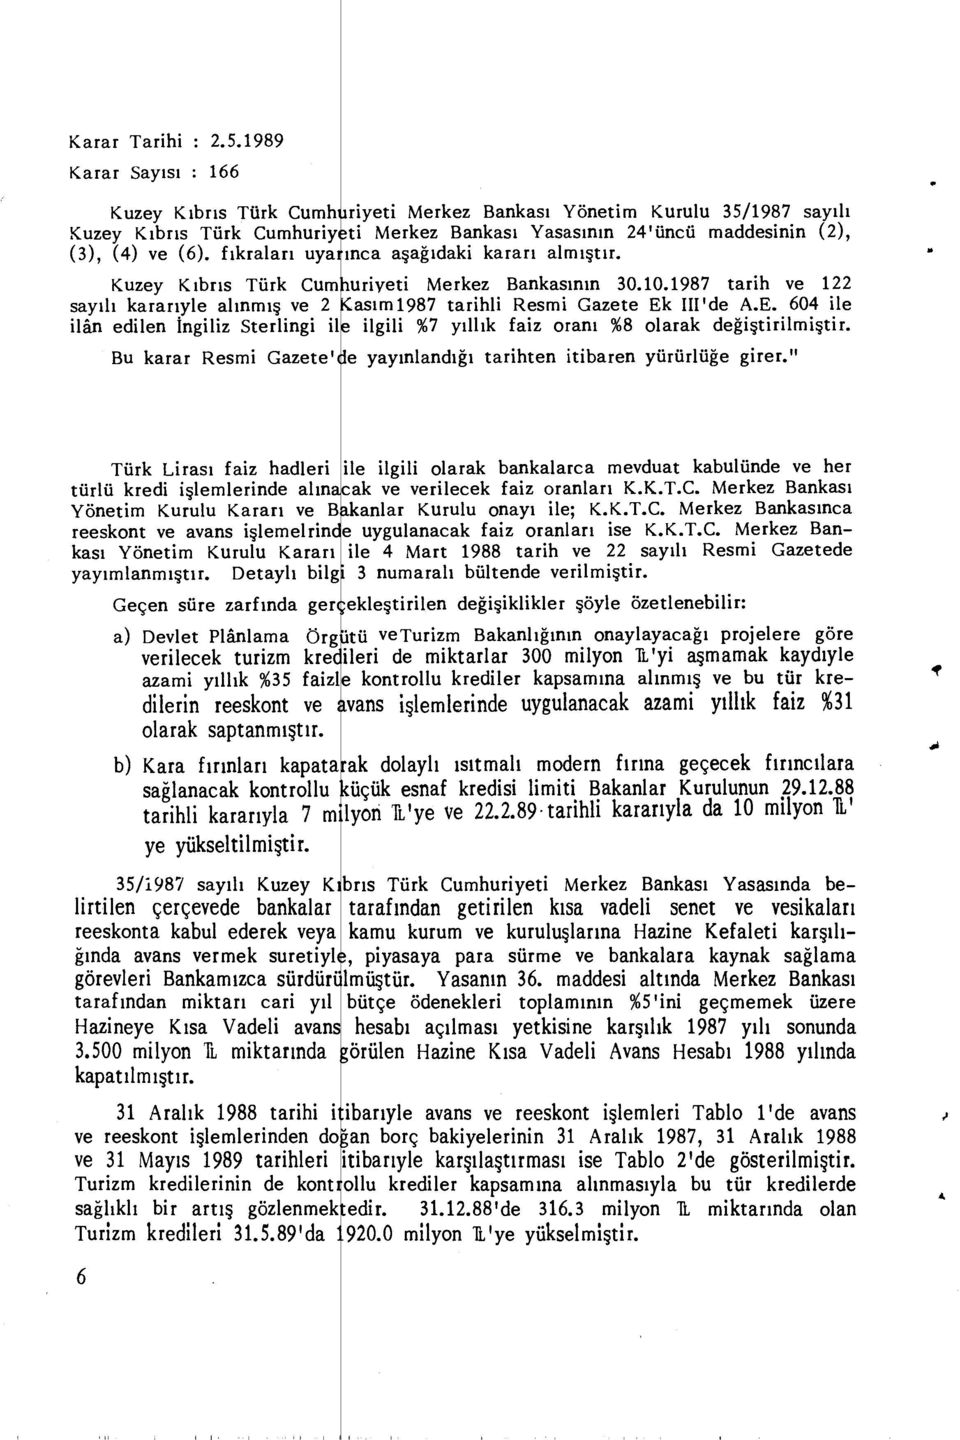 Bankas ı Yasas ının 24'üncü maddesinin (2), ınca a şağıdaki karar ı alm ışt ı r. uriyeti Merkez Bankas ın ın 30.10.1987 tarih ve 122 as ı m1987 tarihli Resmi Gazete Ek